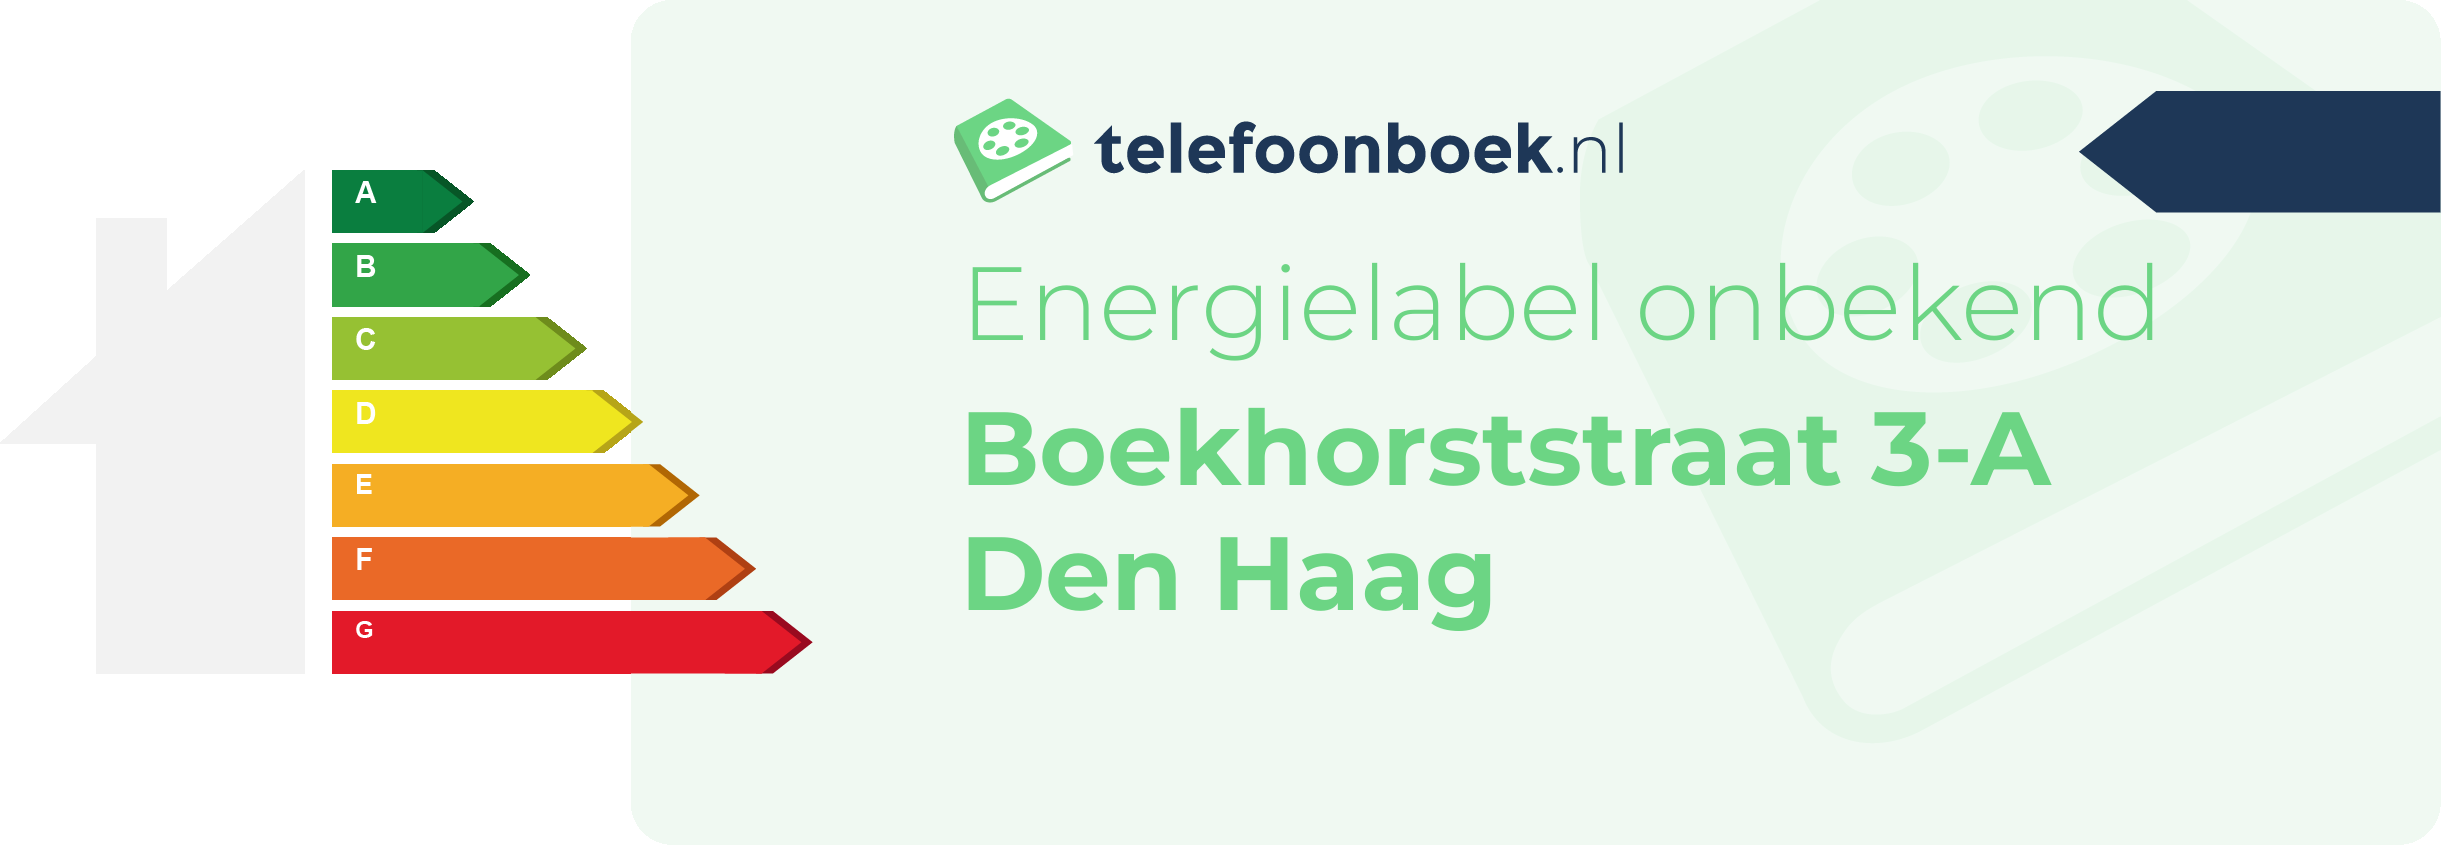 Energielabel Boekhorststraat 3-A Den Haag